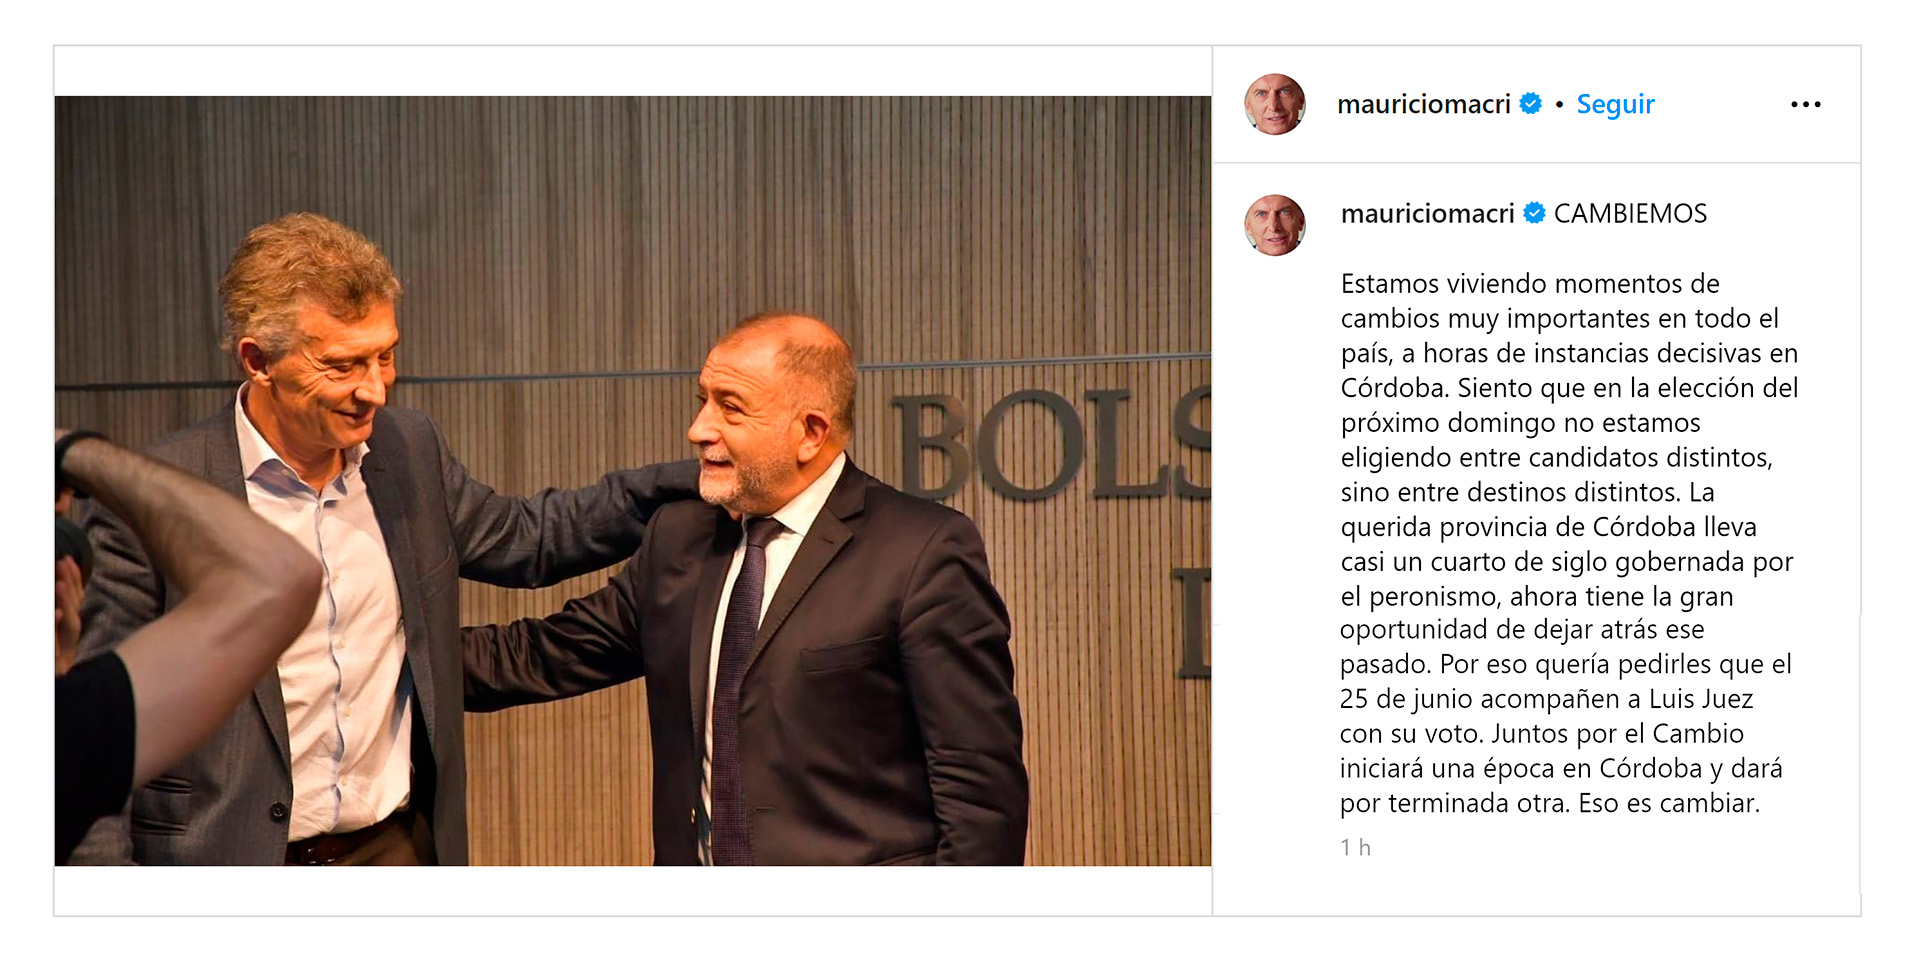 El mensaje que Mauricio Macri le envió a Luis Juez previo al cierre de campaña en Córdoba